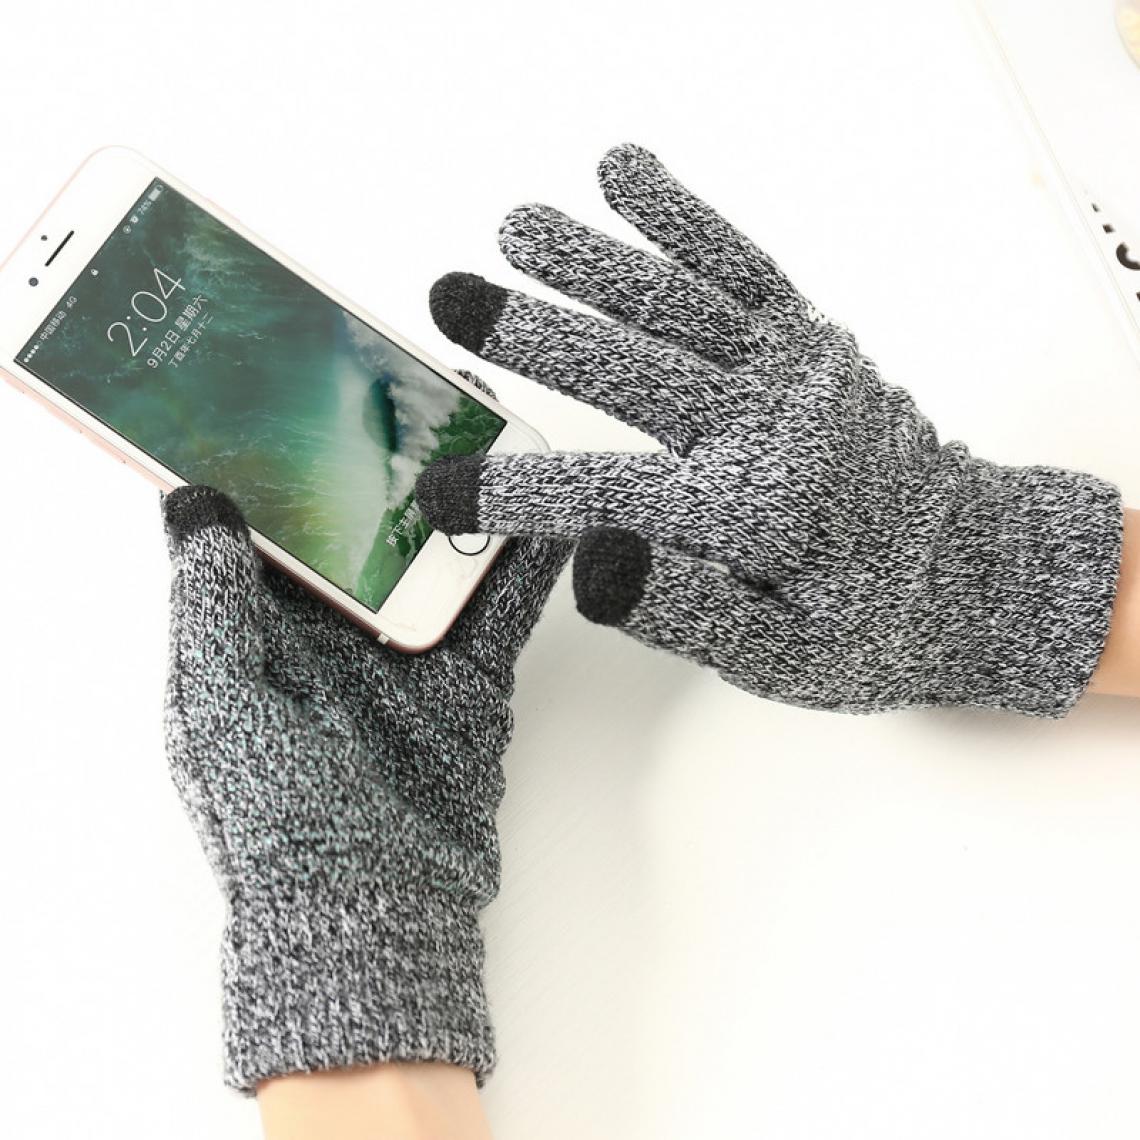 Shot - Gants Homme tactiles pour XIAOMI Mi 10 Pro Smartphone Taille M 3 doigts Hiver (GRIS) - Autres accessoires smartphone